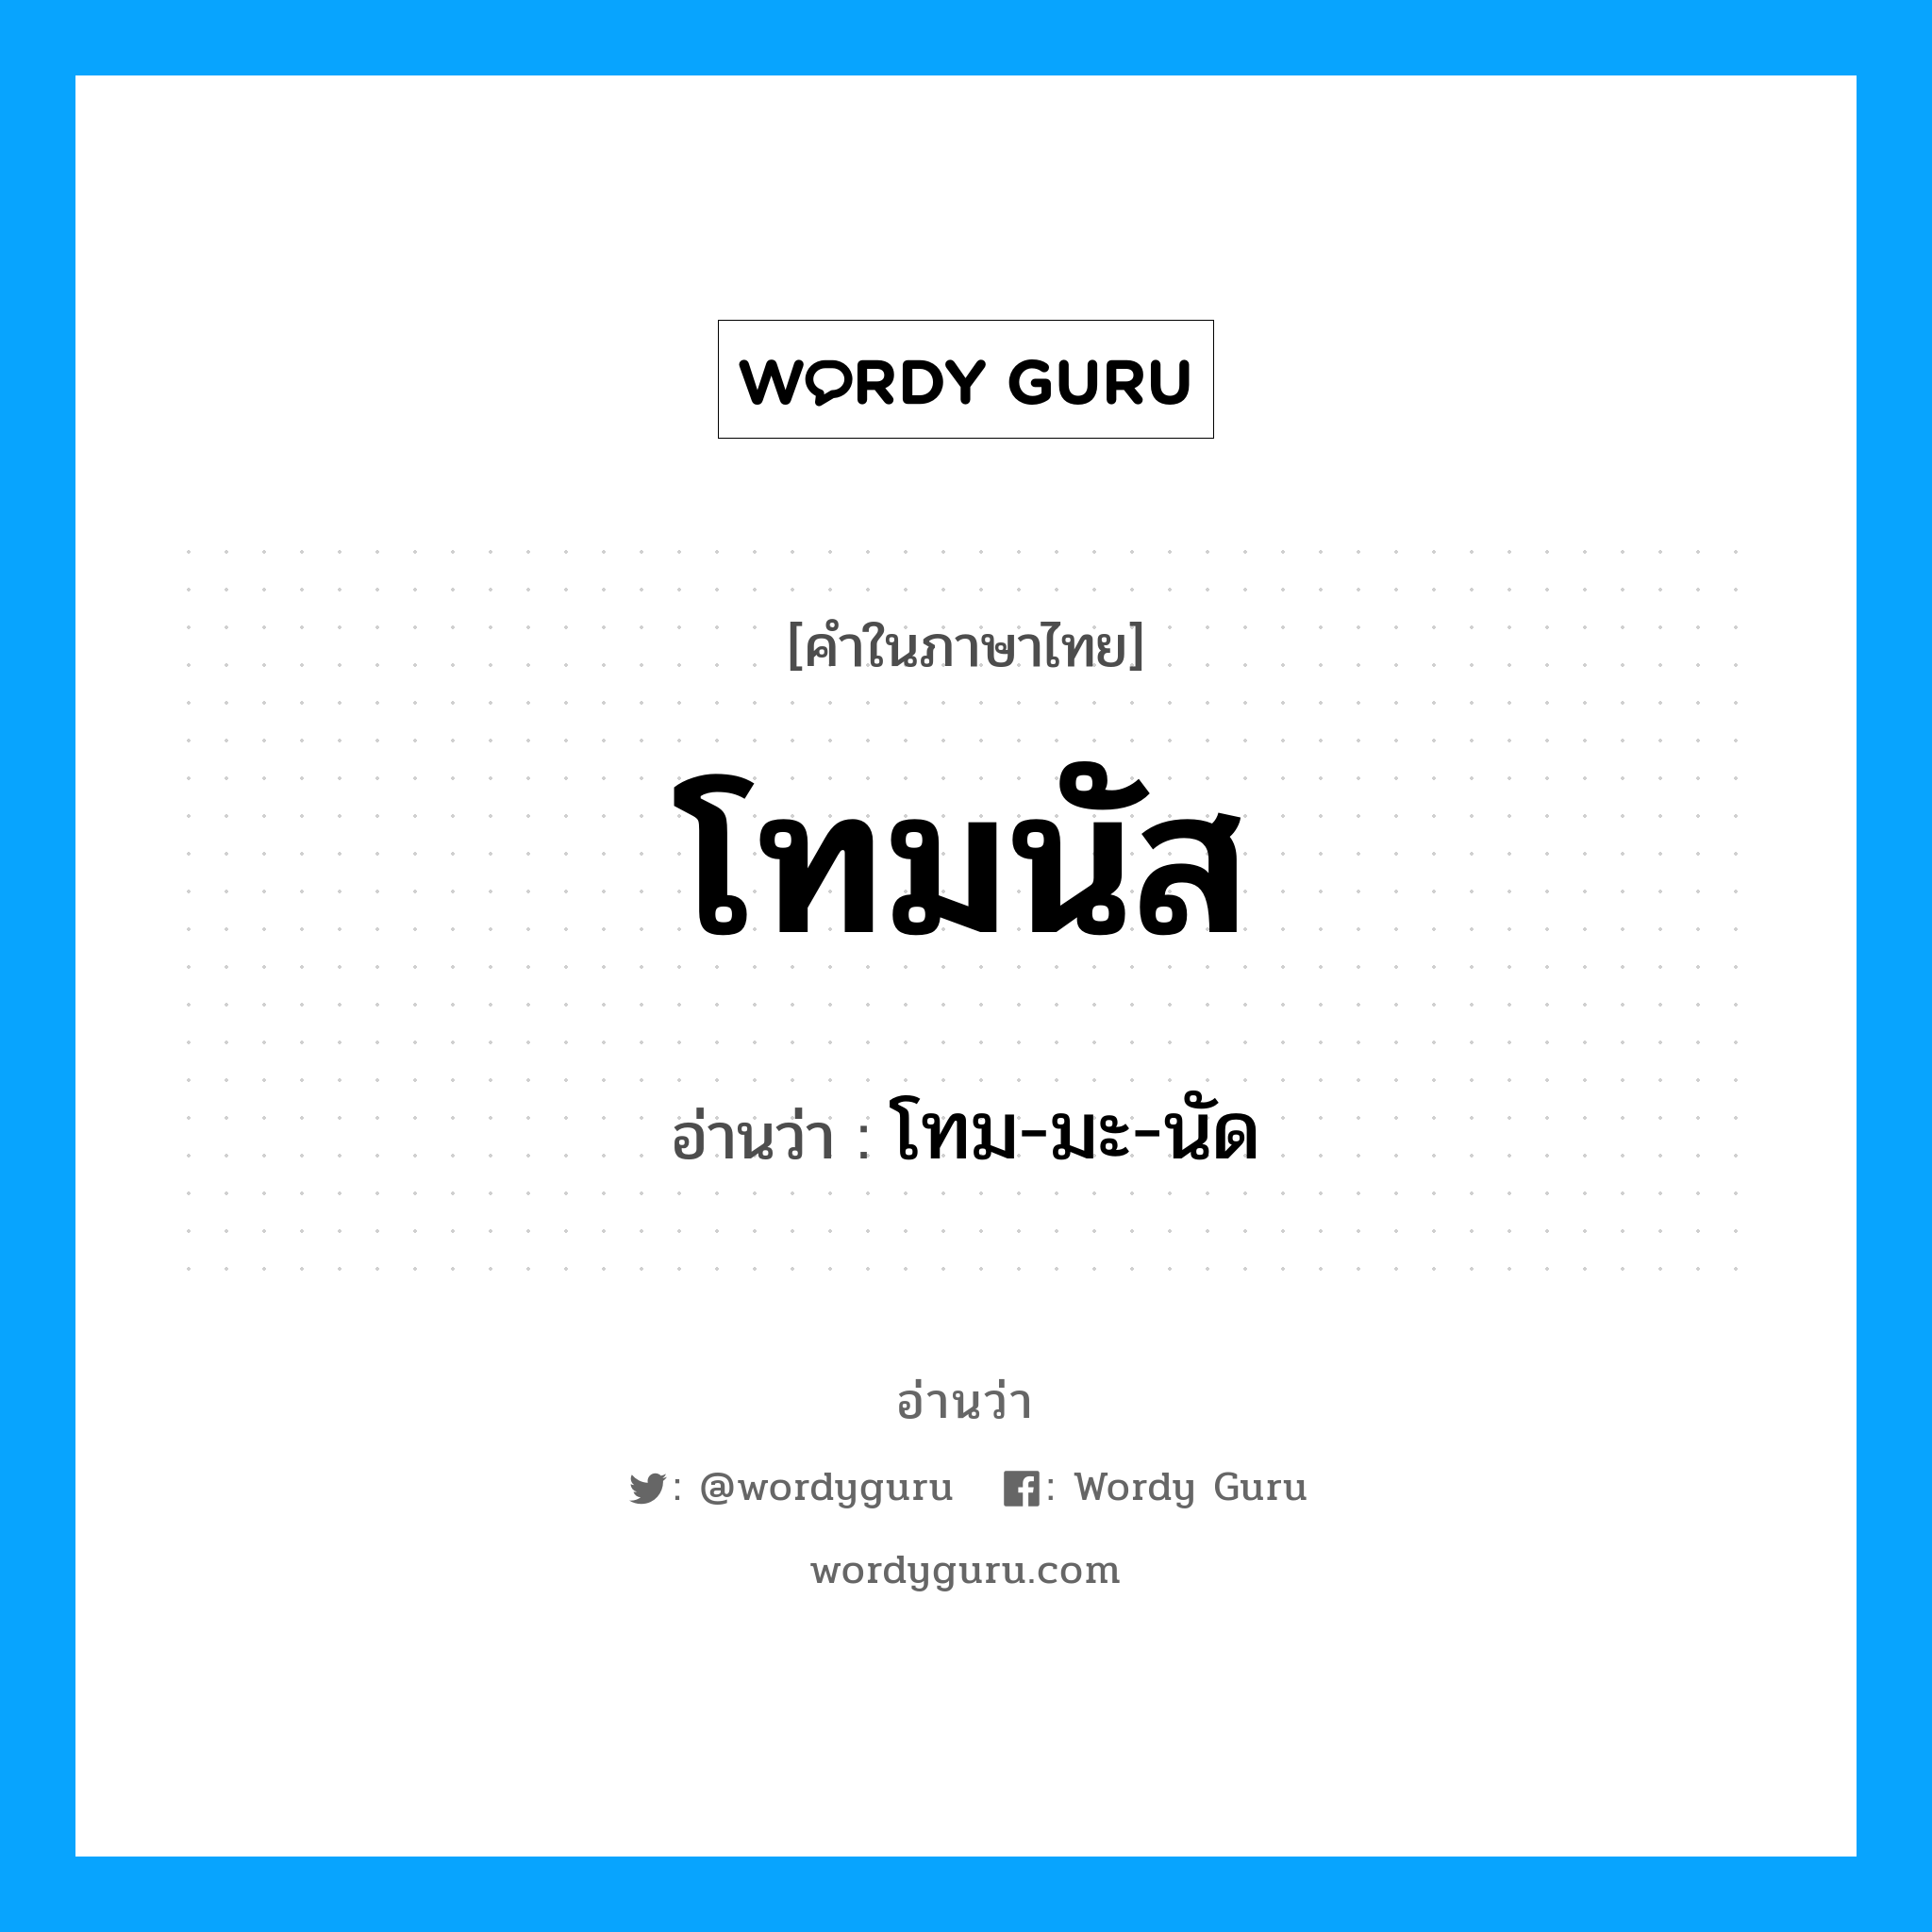 โทม-มะ-นัด เป็นคำอ่านของคำไหน?, คำในภาษาไทย โทม-มะ-นัด อ่านว่า โทมนัส